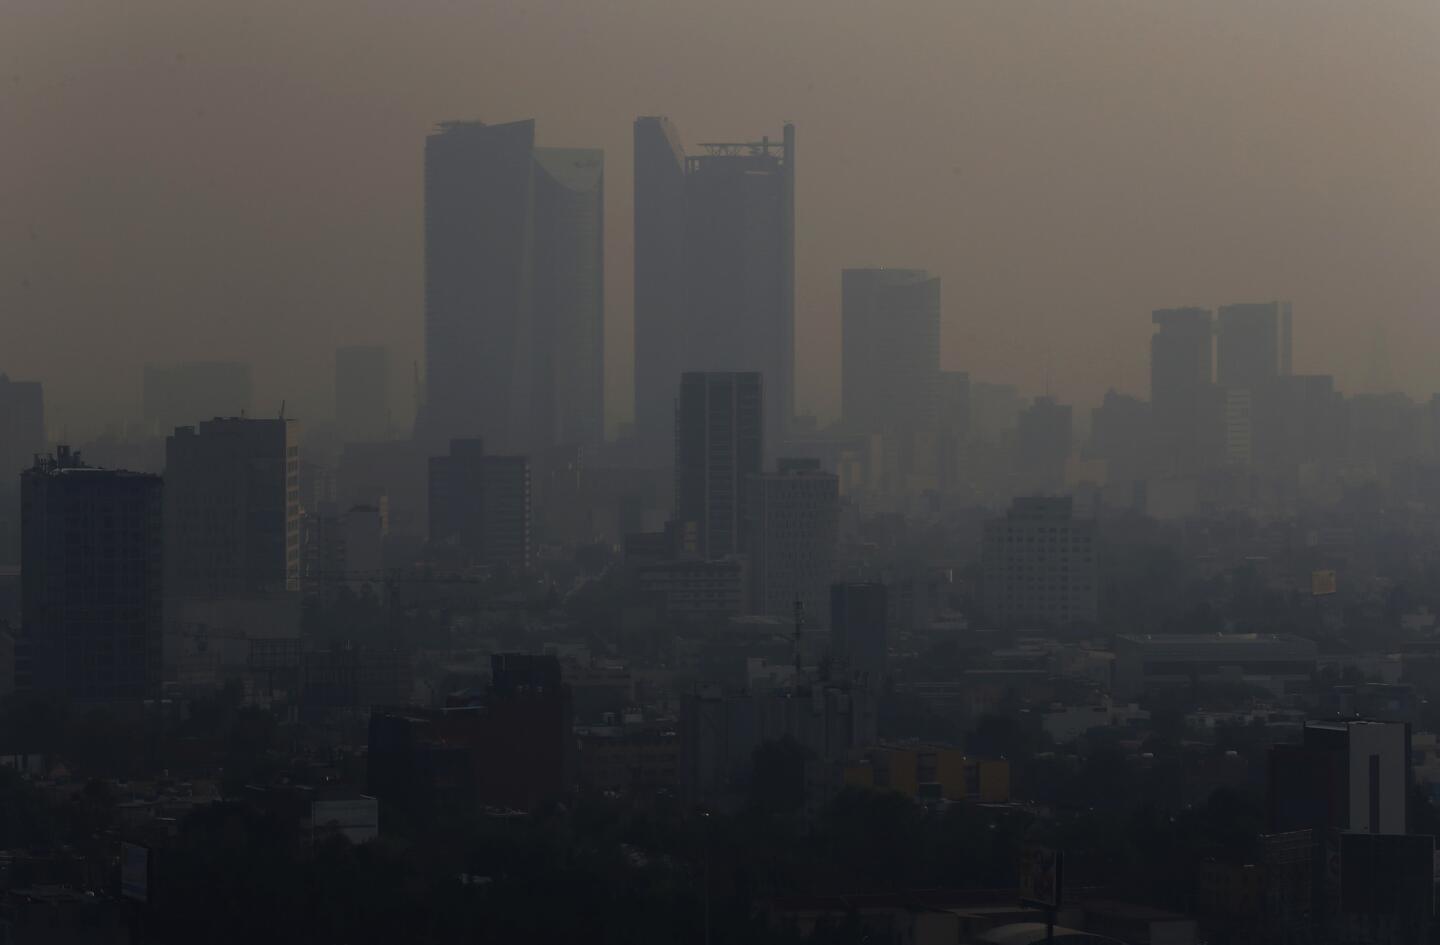 Una nube de humo y contaminación sobre la Ciudad de México. Las autoridades declararon emergencia ambiental debido al humo de incendios forestales rn varias zonas cercanas a la metrópoli.